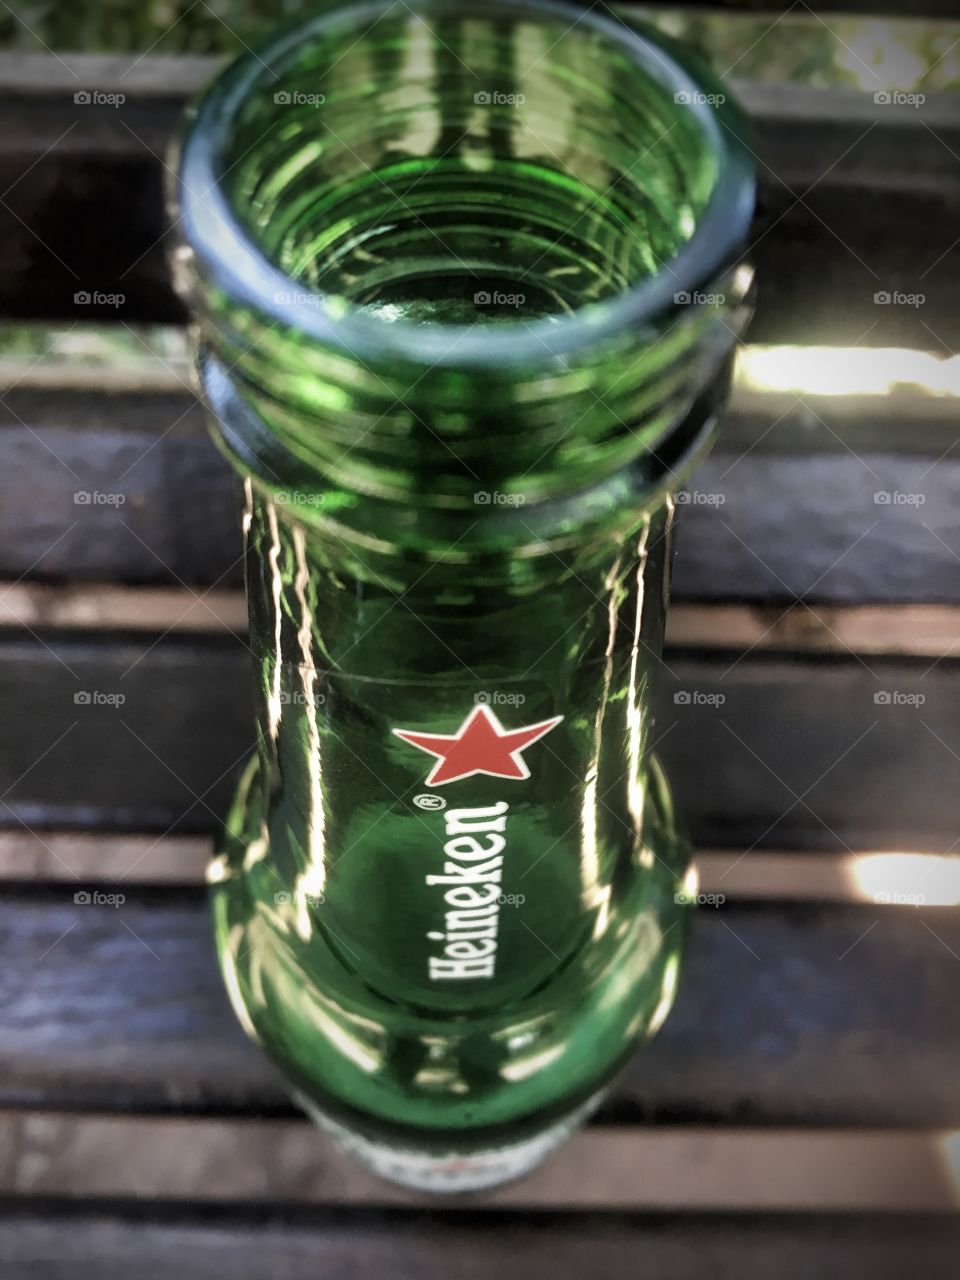 Heineken _ iphone 6s + snapseed